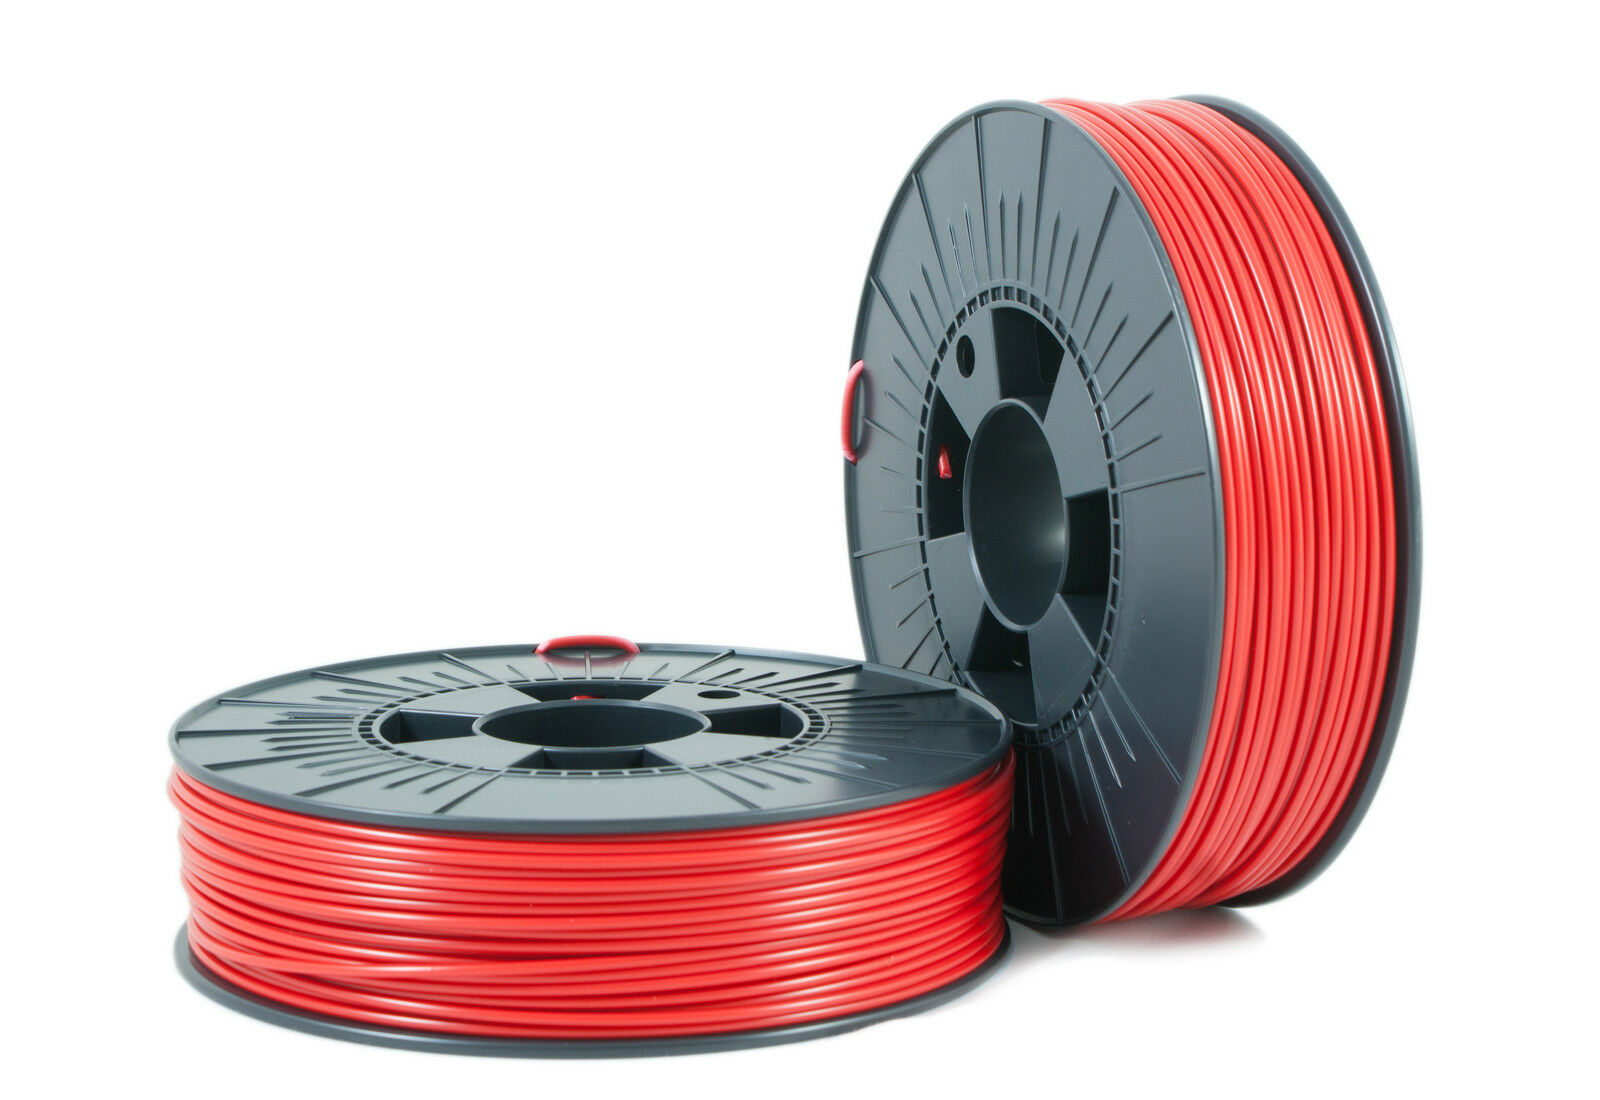 € 42,60 / Kilogram Abs 2,85mm  Red 2 Ca. Ral 3001 0,75kg - 3d Filament Supplies